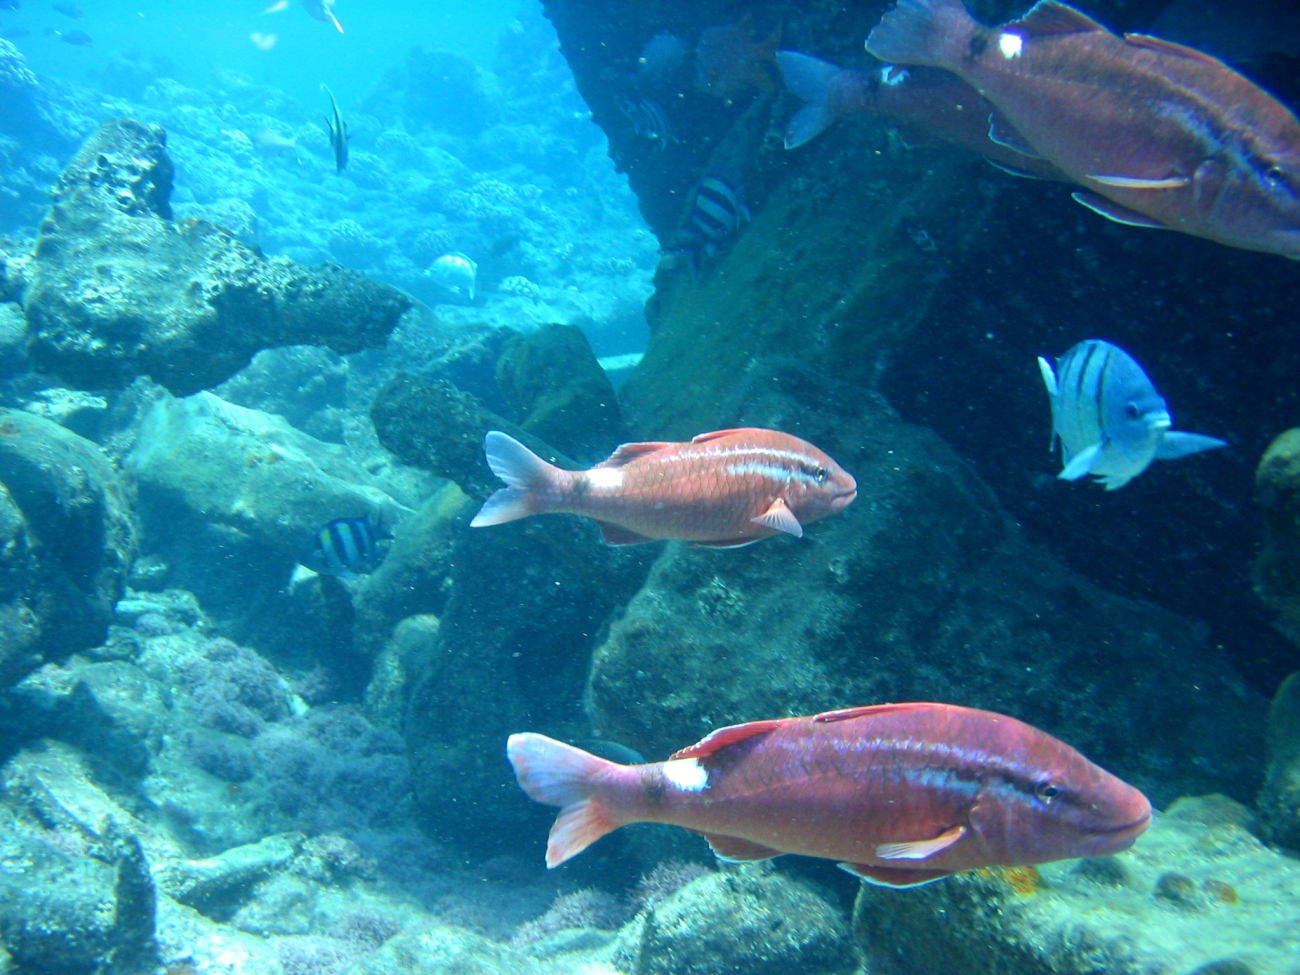 Whitesaddle goatfish (Parupeneus porphyreus) in foreground